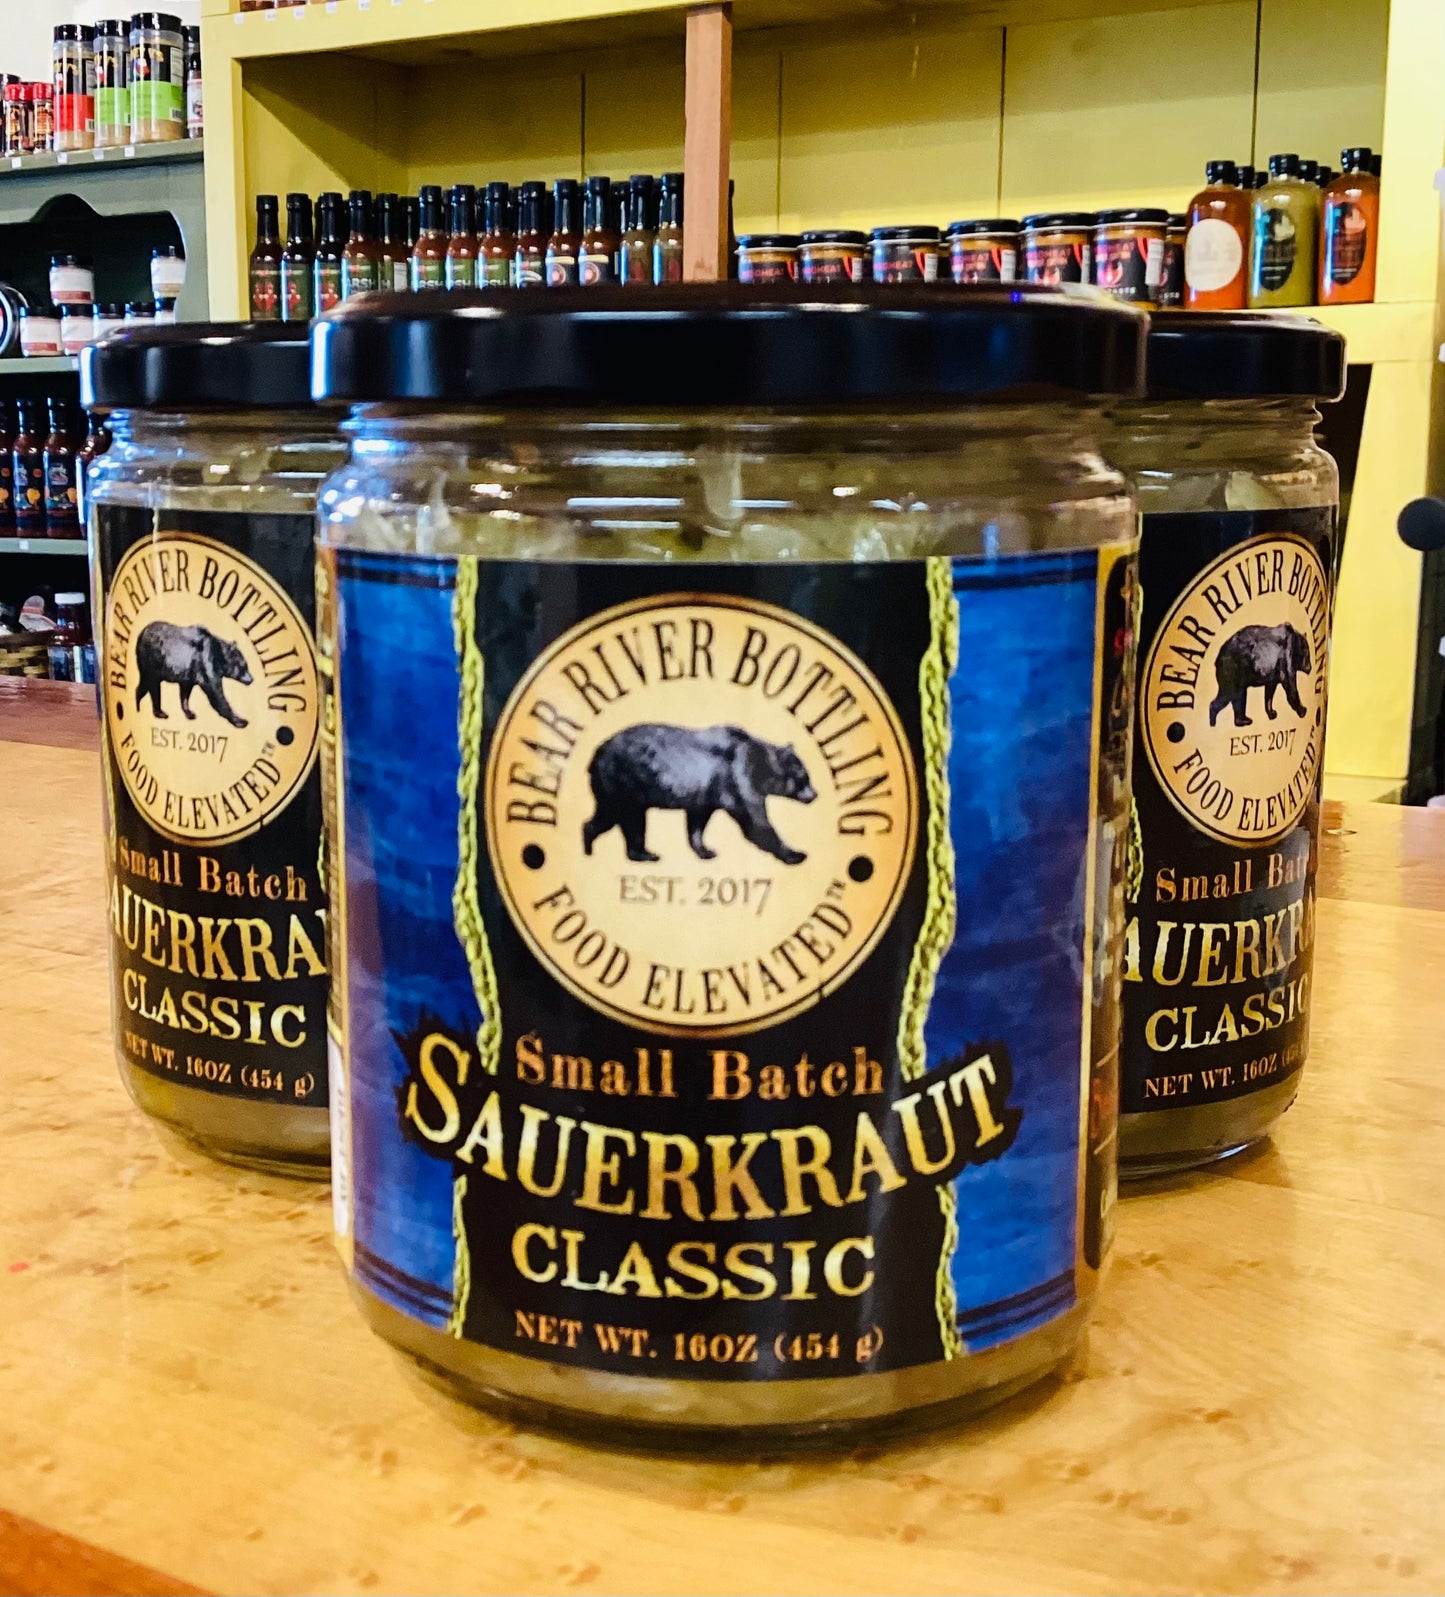 Bear River Bottling Small Batch Classic Sauerkraut